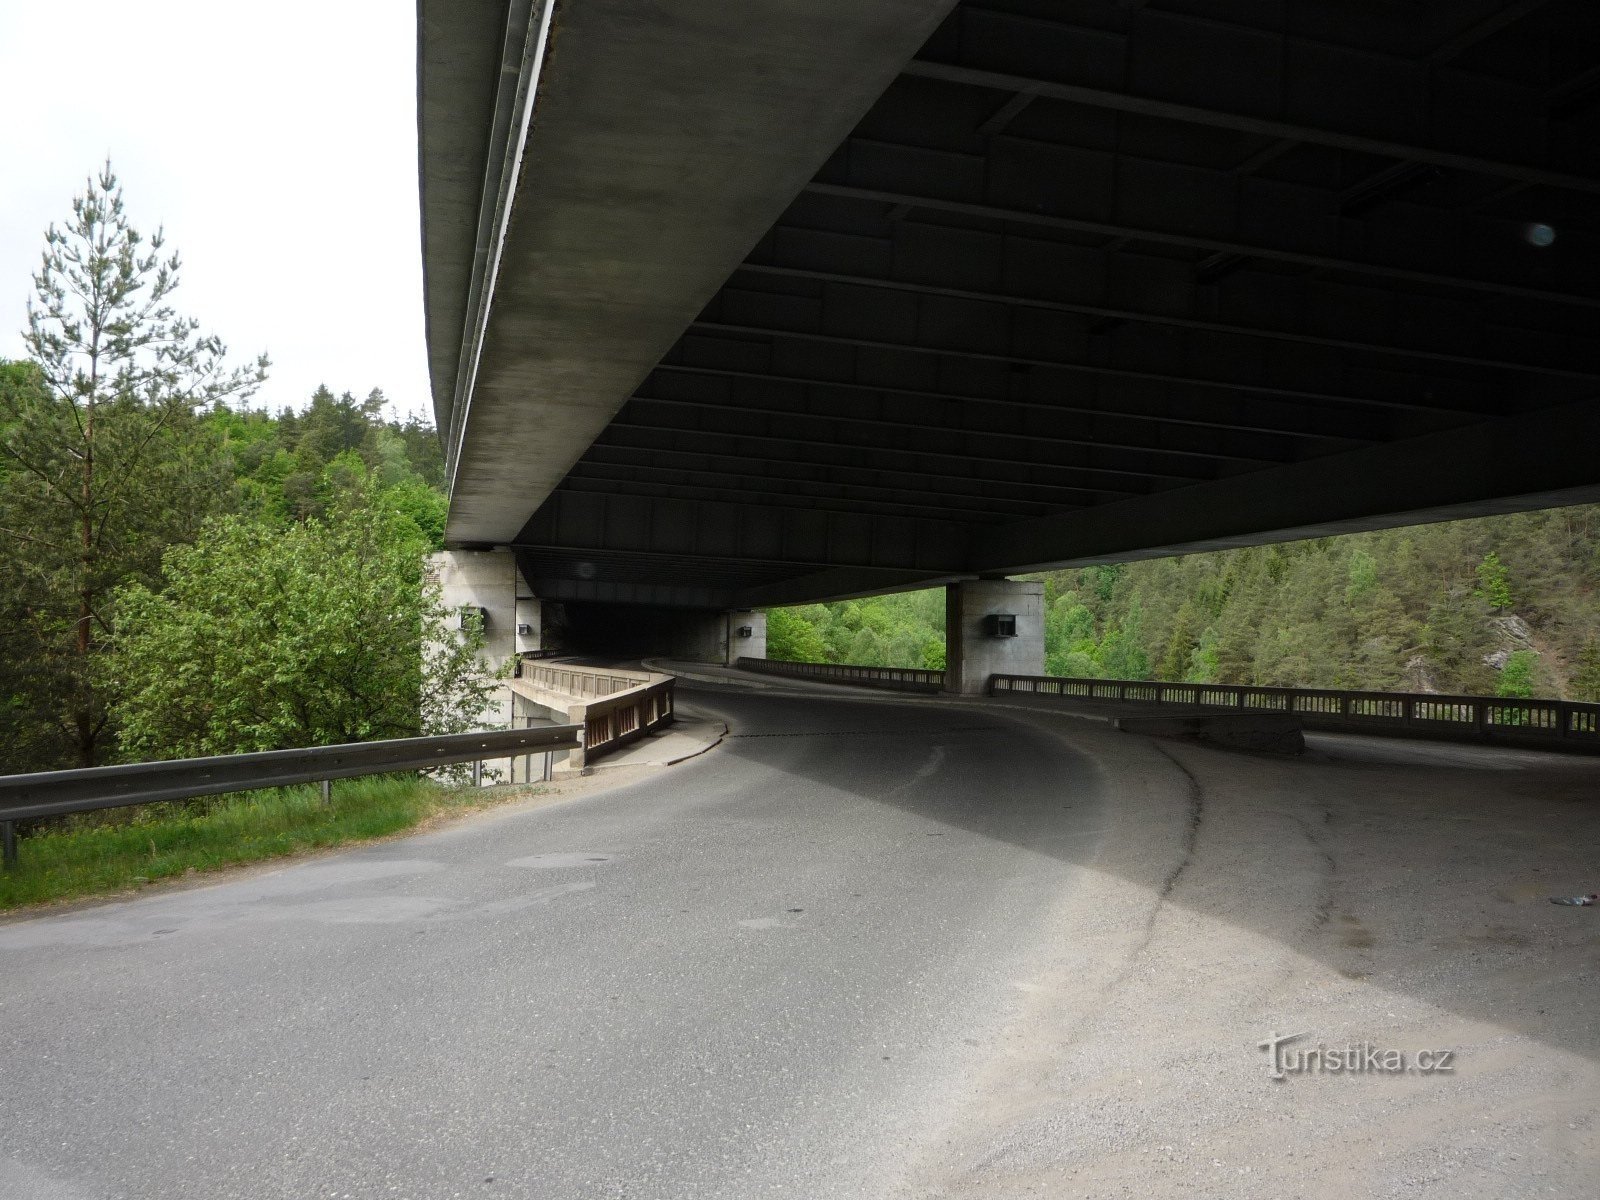 Pišt - autópálya kettős híd (PE)